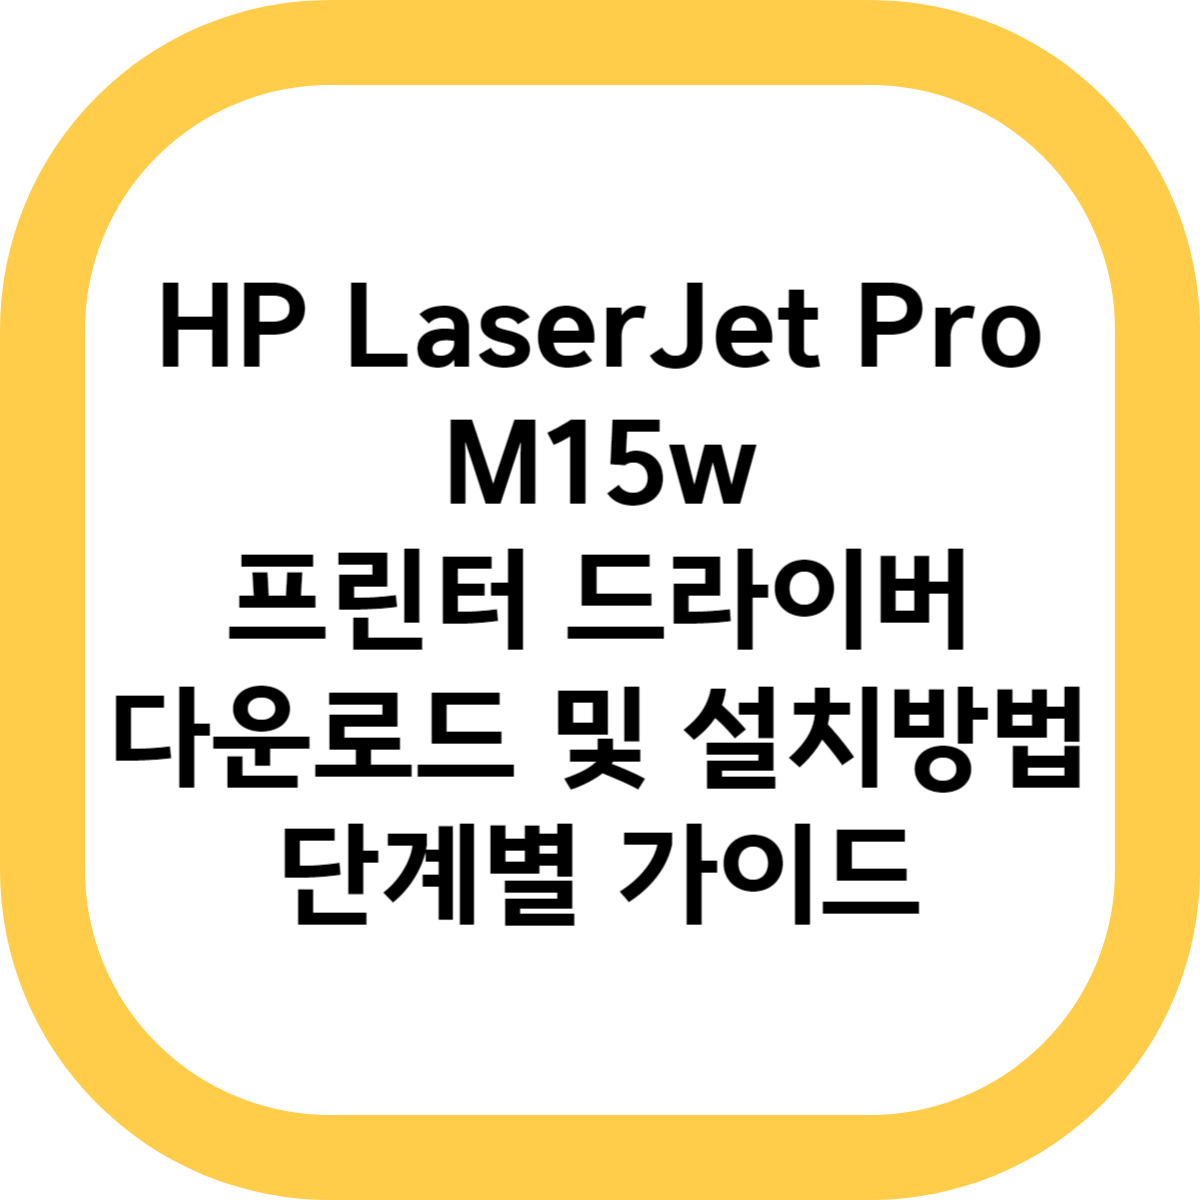 HP LaserJet Pro M15w 프린터 드라이버 다운로드 및 설치방법 단계별 가이드